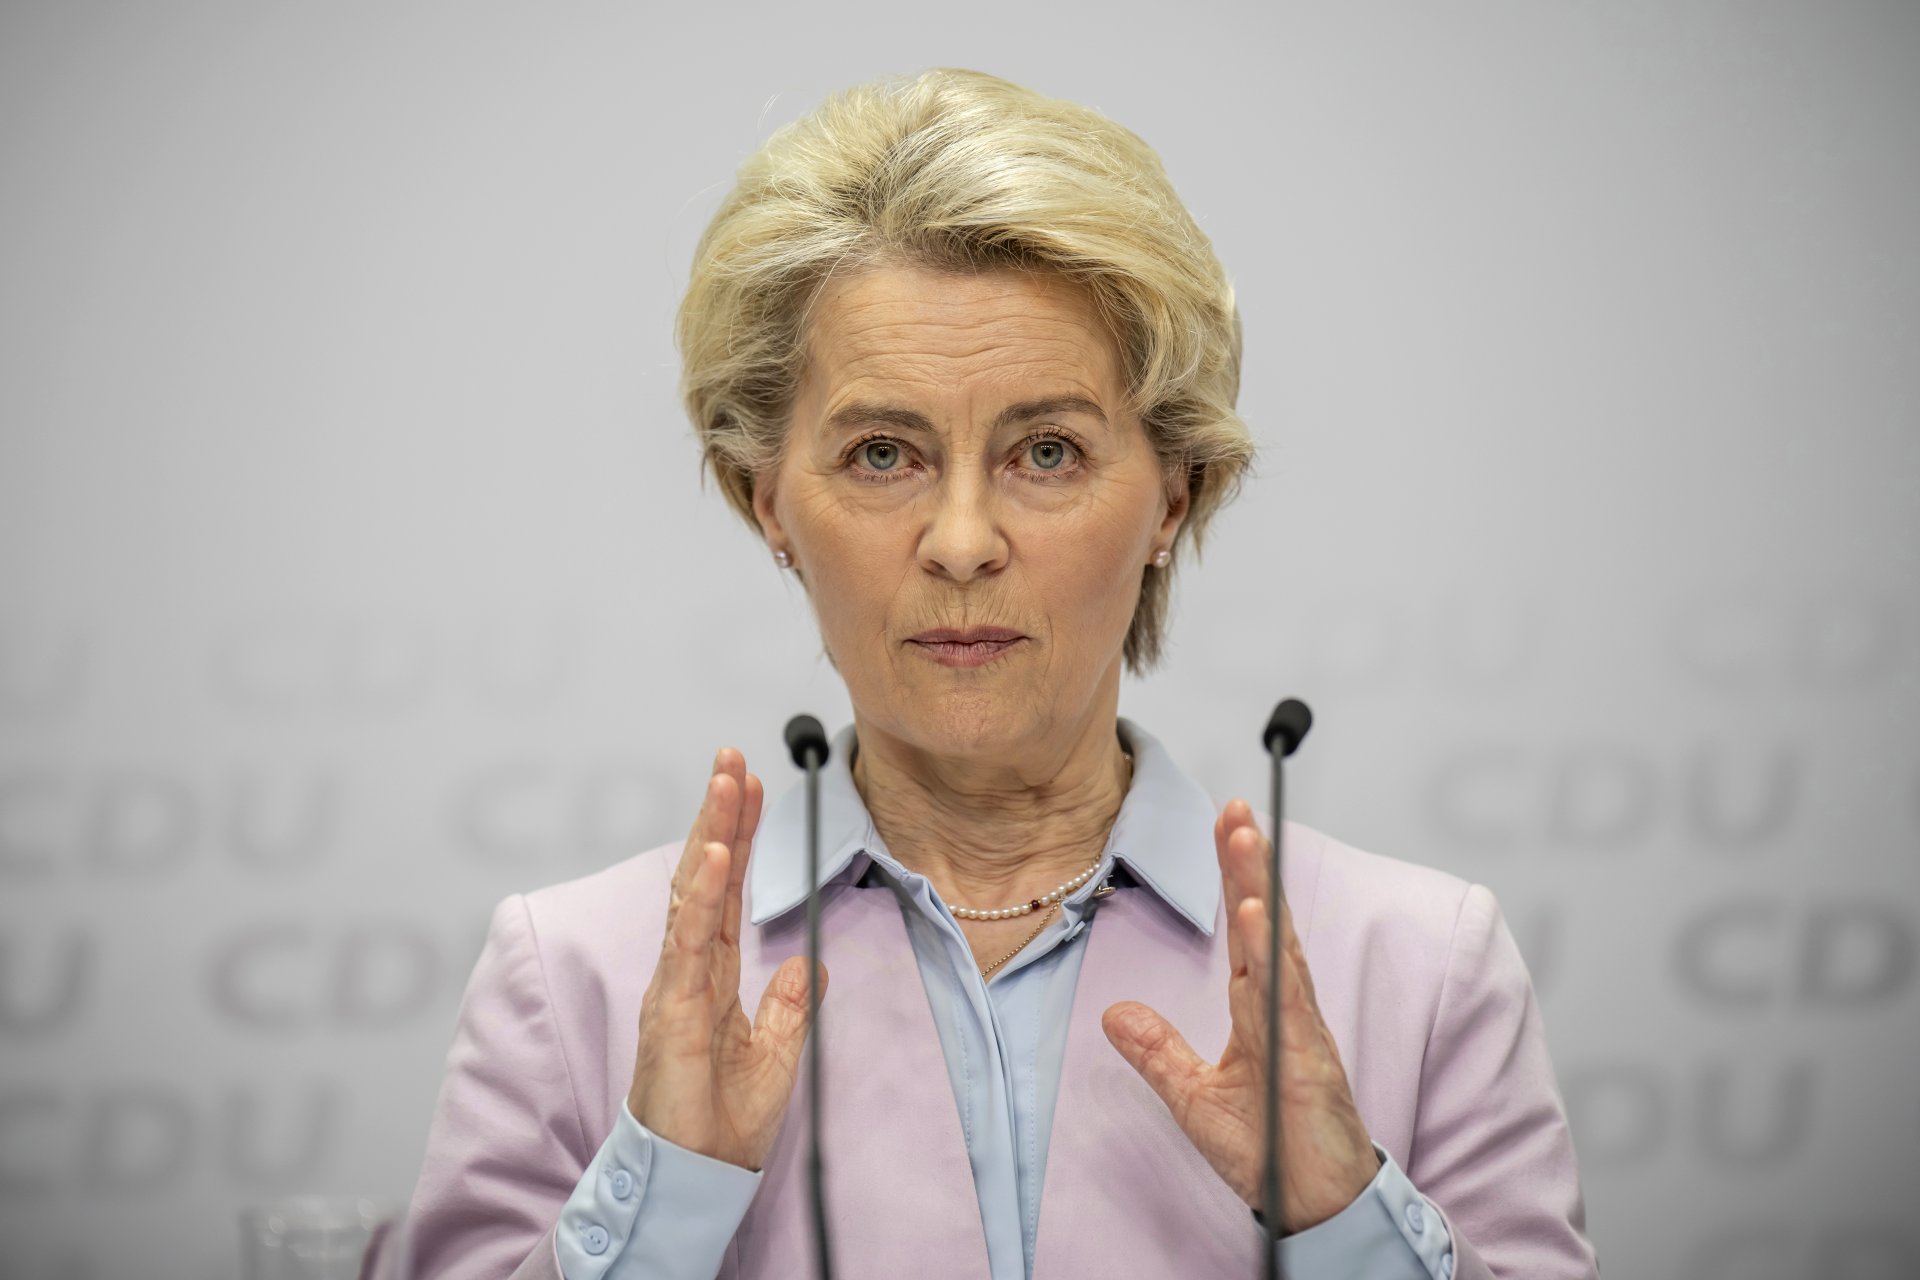 Урсула фон дер Лайен - председател на Европейската комисия